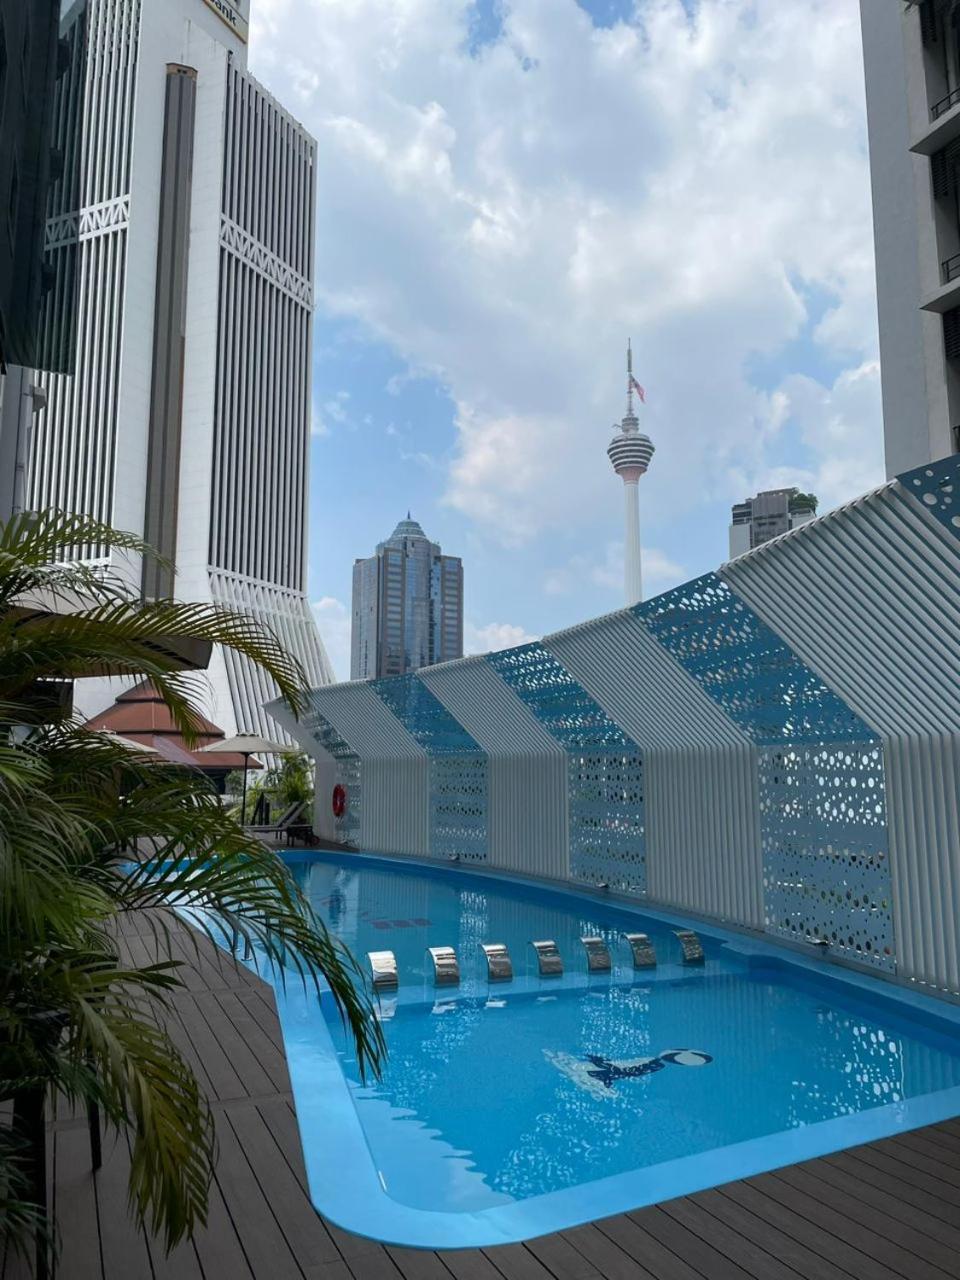 Ancasa Hotel Kuala Lumpur, Chinatown By Ancasa Hotels & Resorts Exterior photo